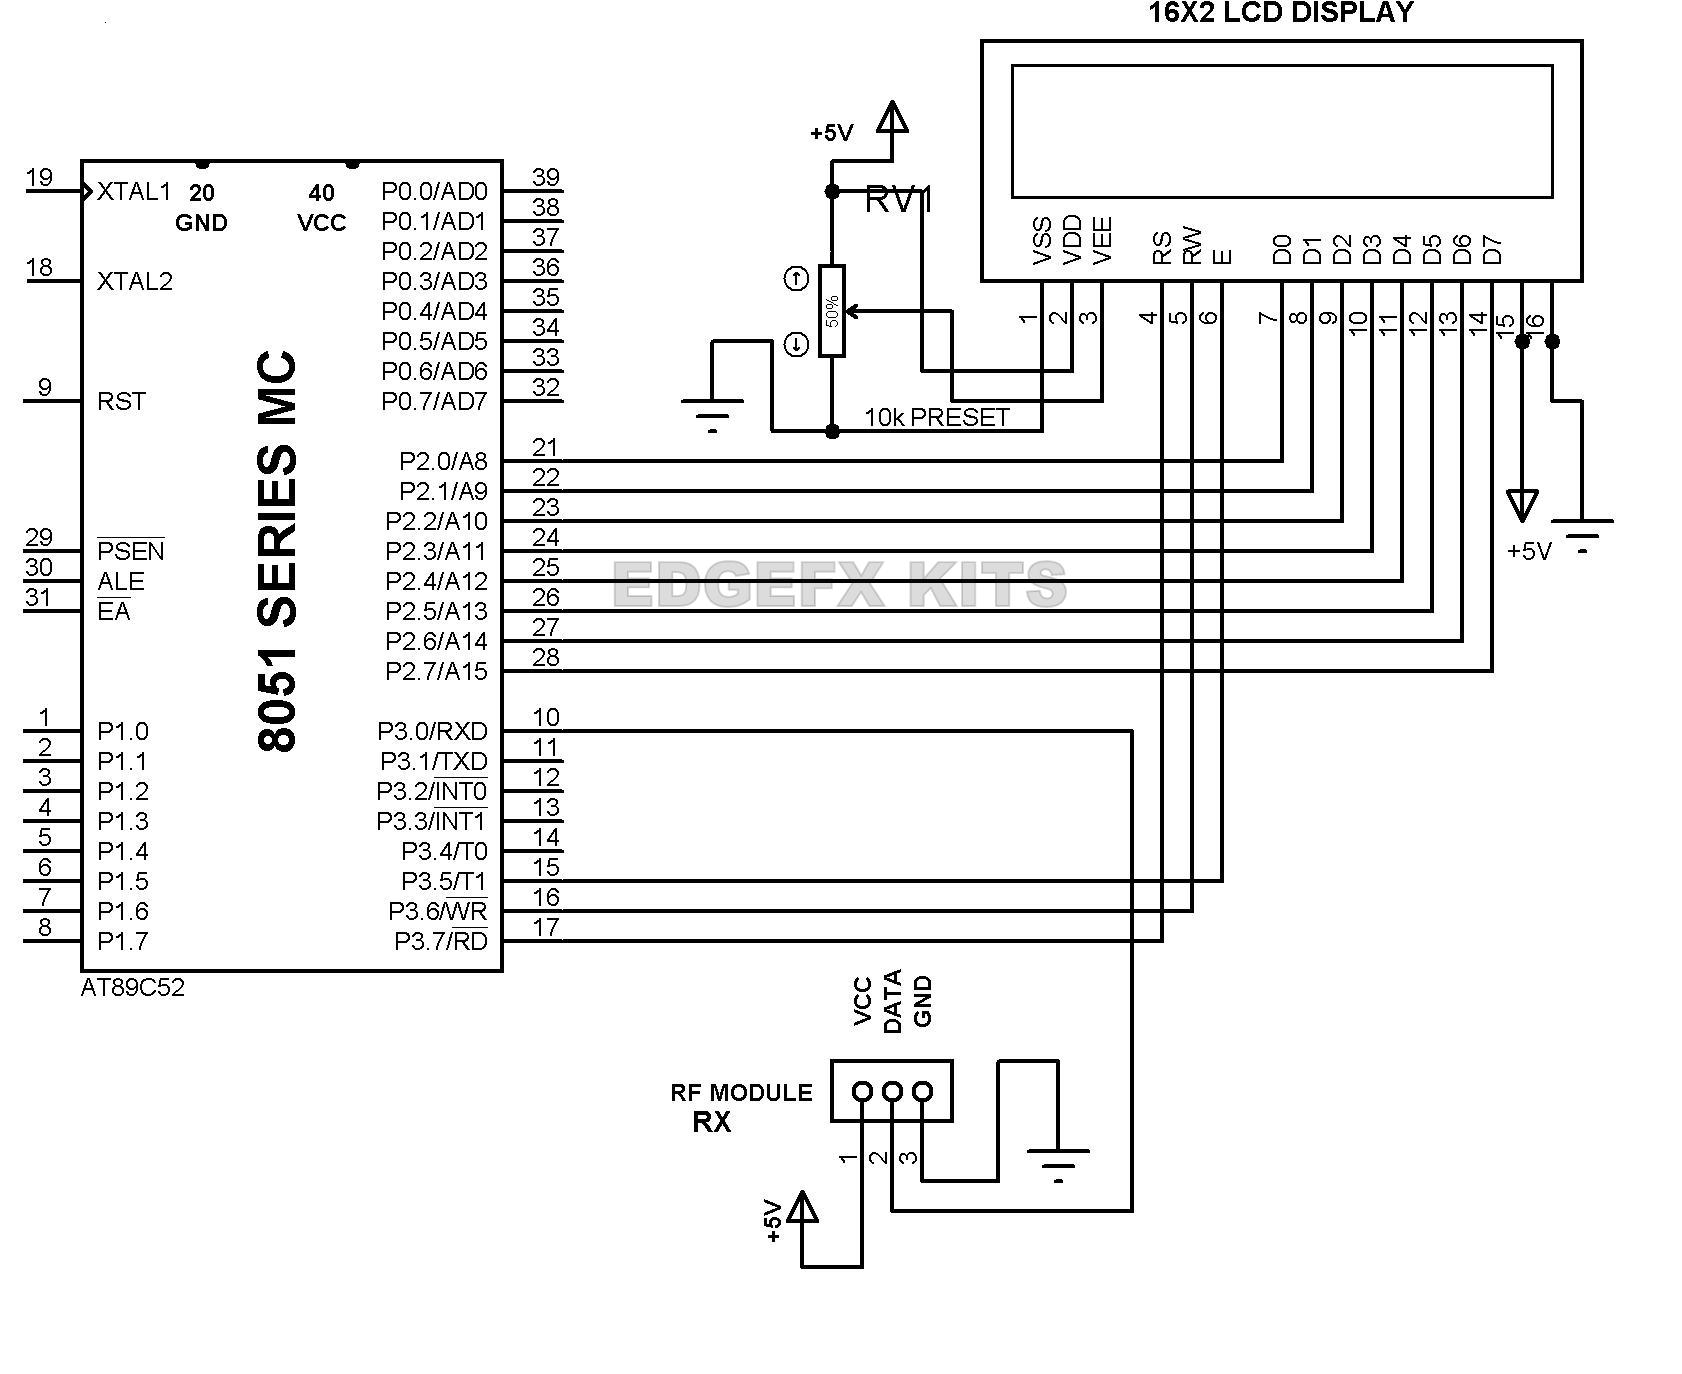 Bluetooth Transmitter Receiver Circuit Diagram Datasheet